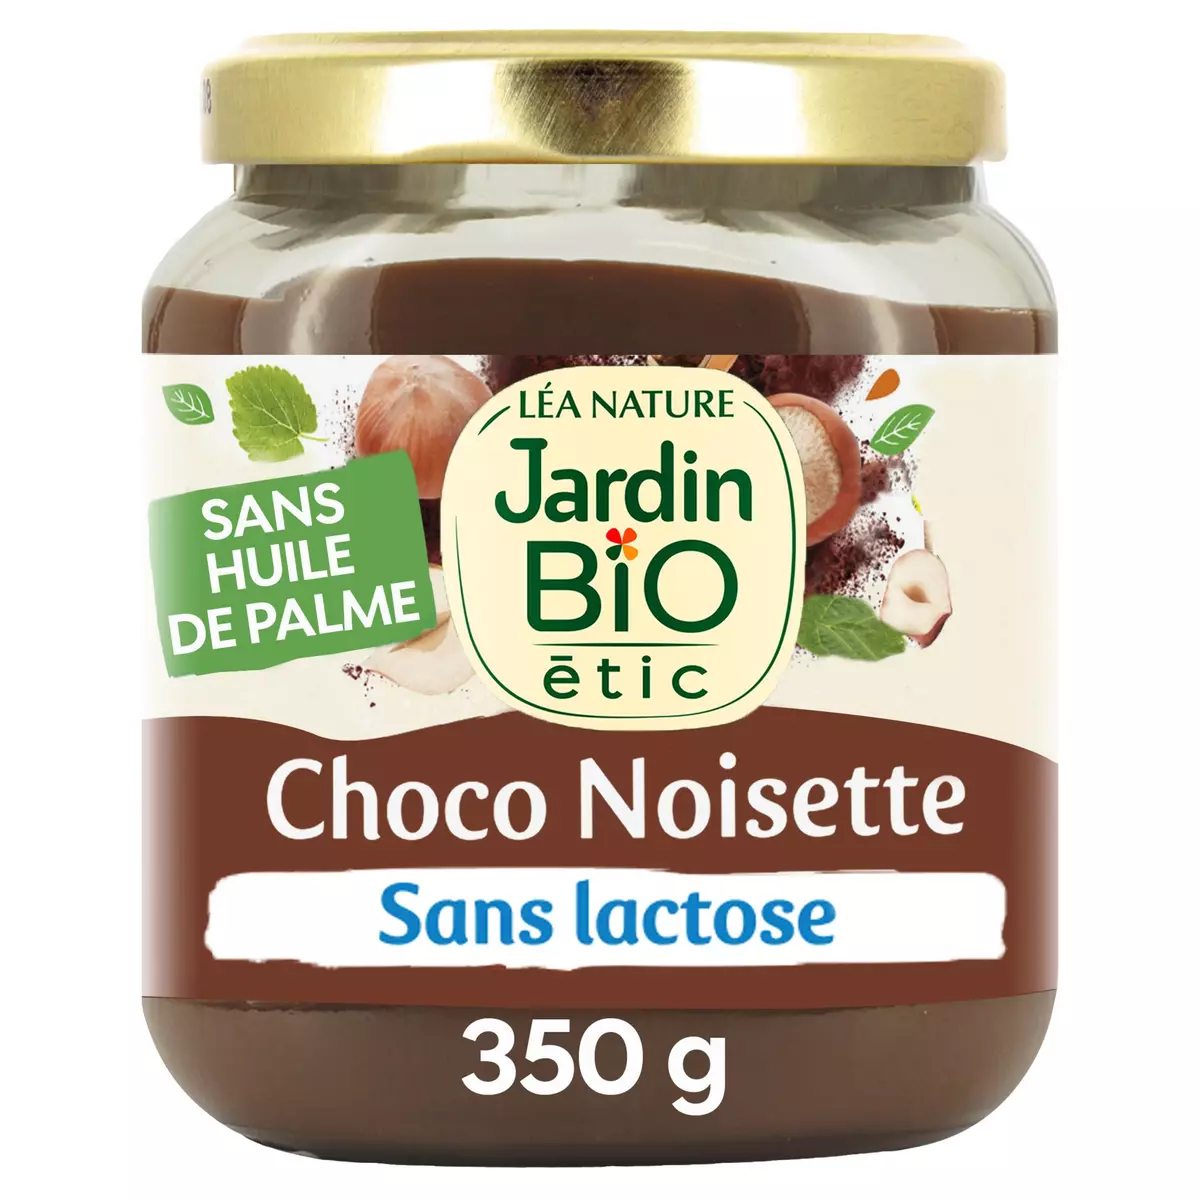 JARDIN BIO ETIC Pâte à tartiner choco noisette sans lactose et sans gluten 350g